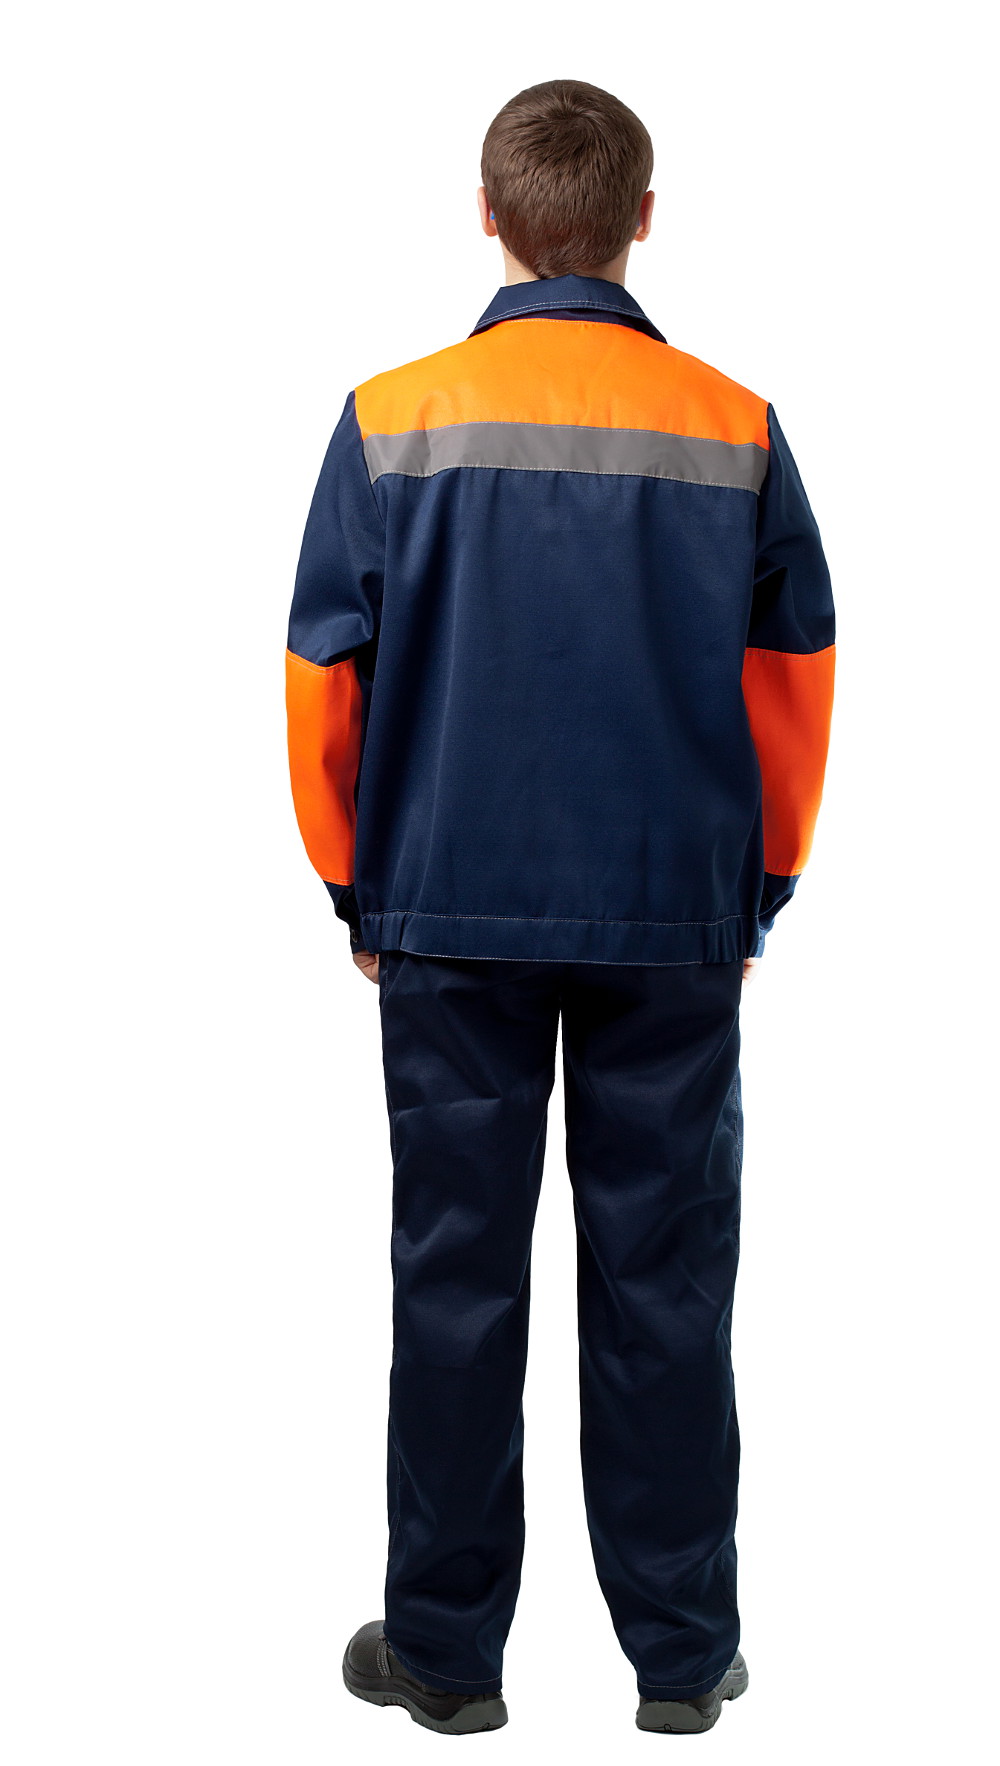 ДНК 109 Костюм «Конвейер» (куртка и полукомбинезон), цвет синий + оранжевый от интернет магазина dnk-specodegda.ru, приобрести днк 109 костюм «конвейер» (куртка и полукомбинезон), цвет синий + оранжевый. Фото №3